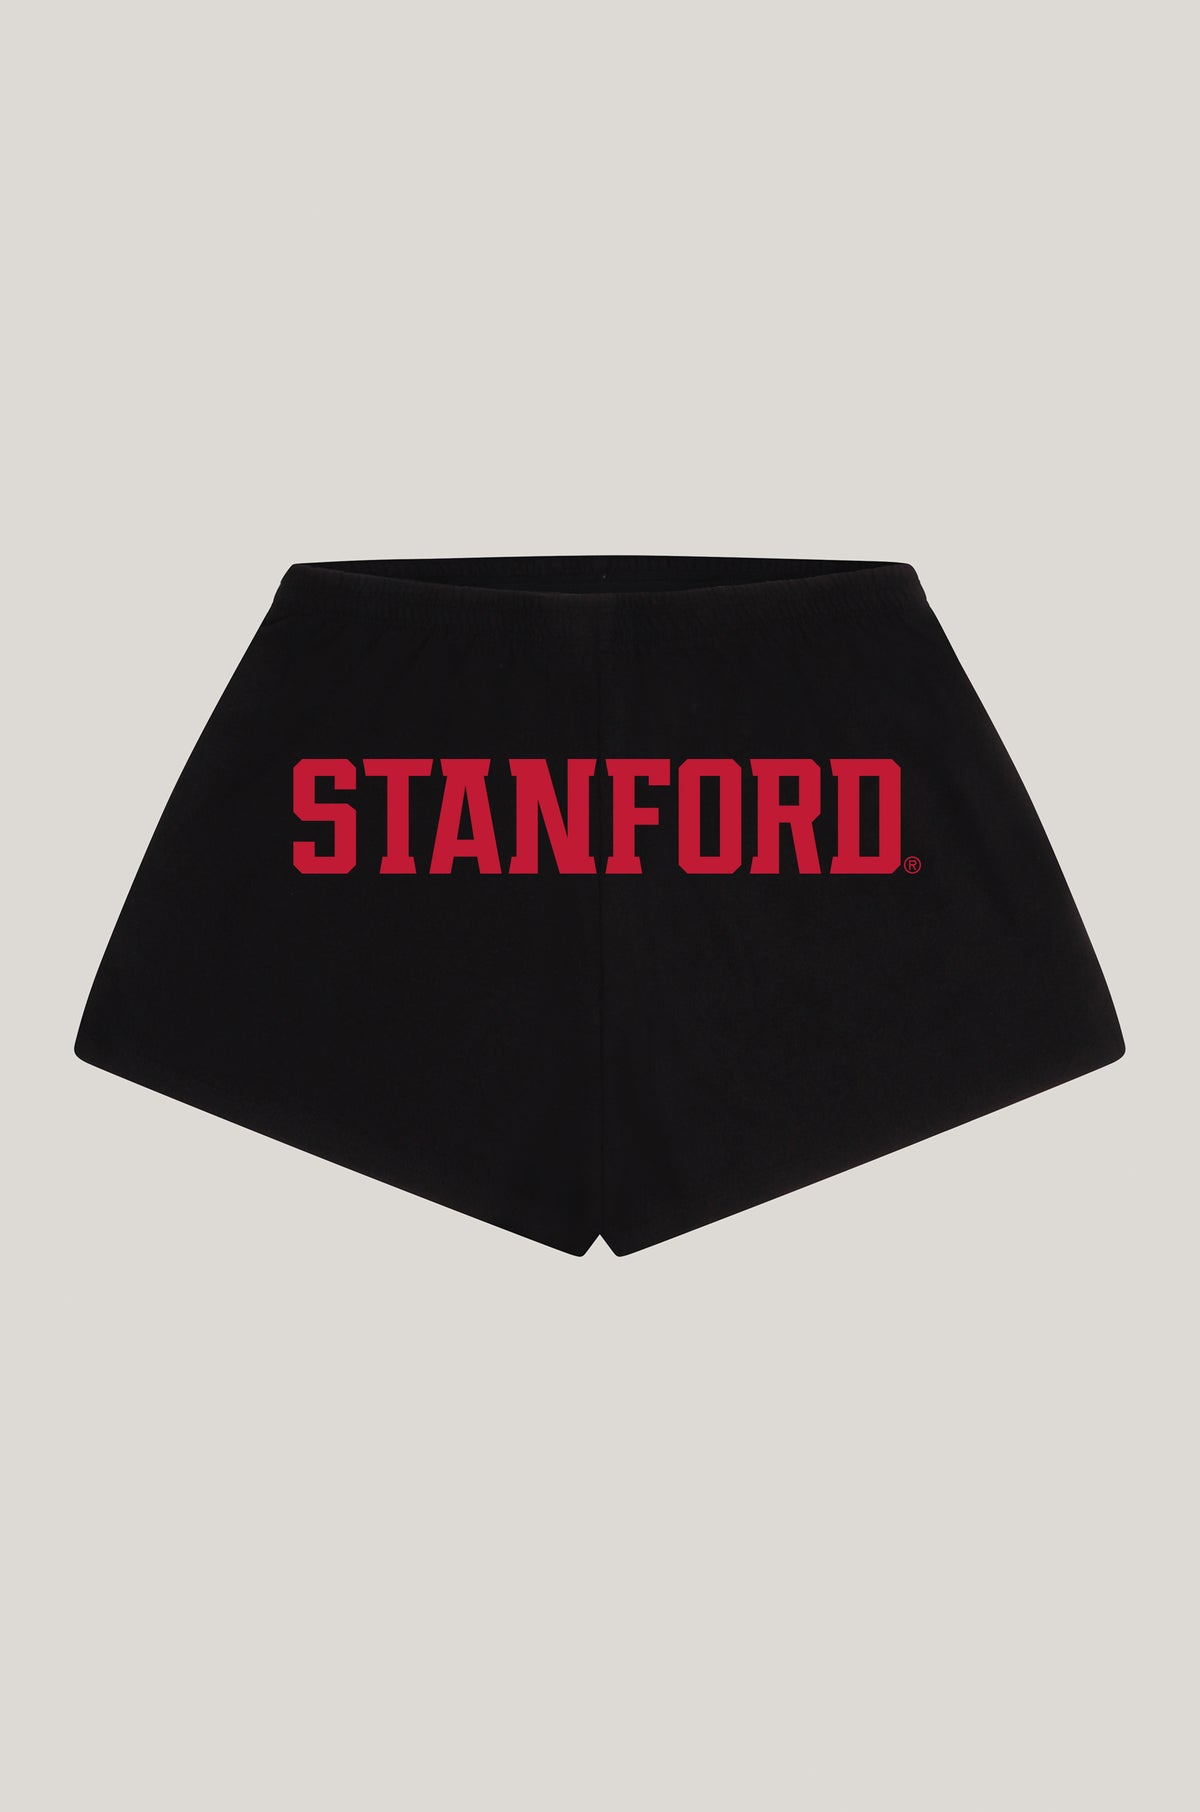 Stanford P.E. Shorts